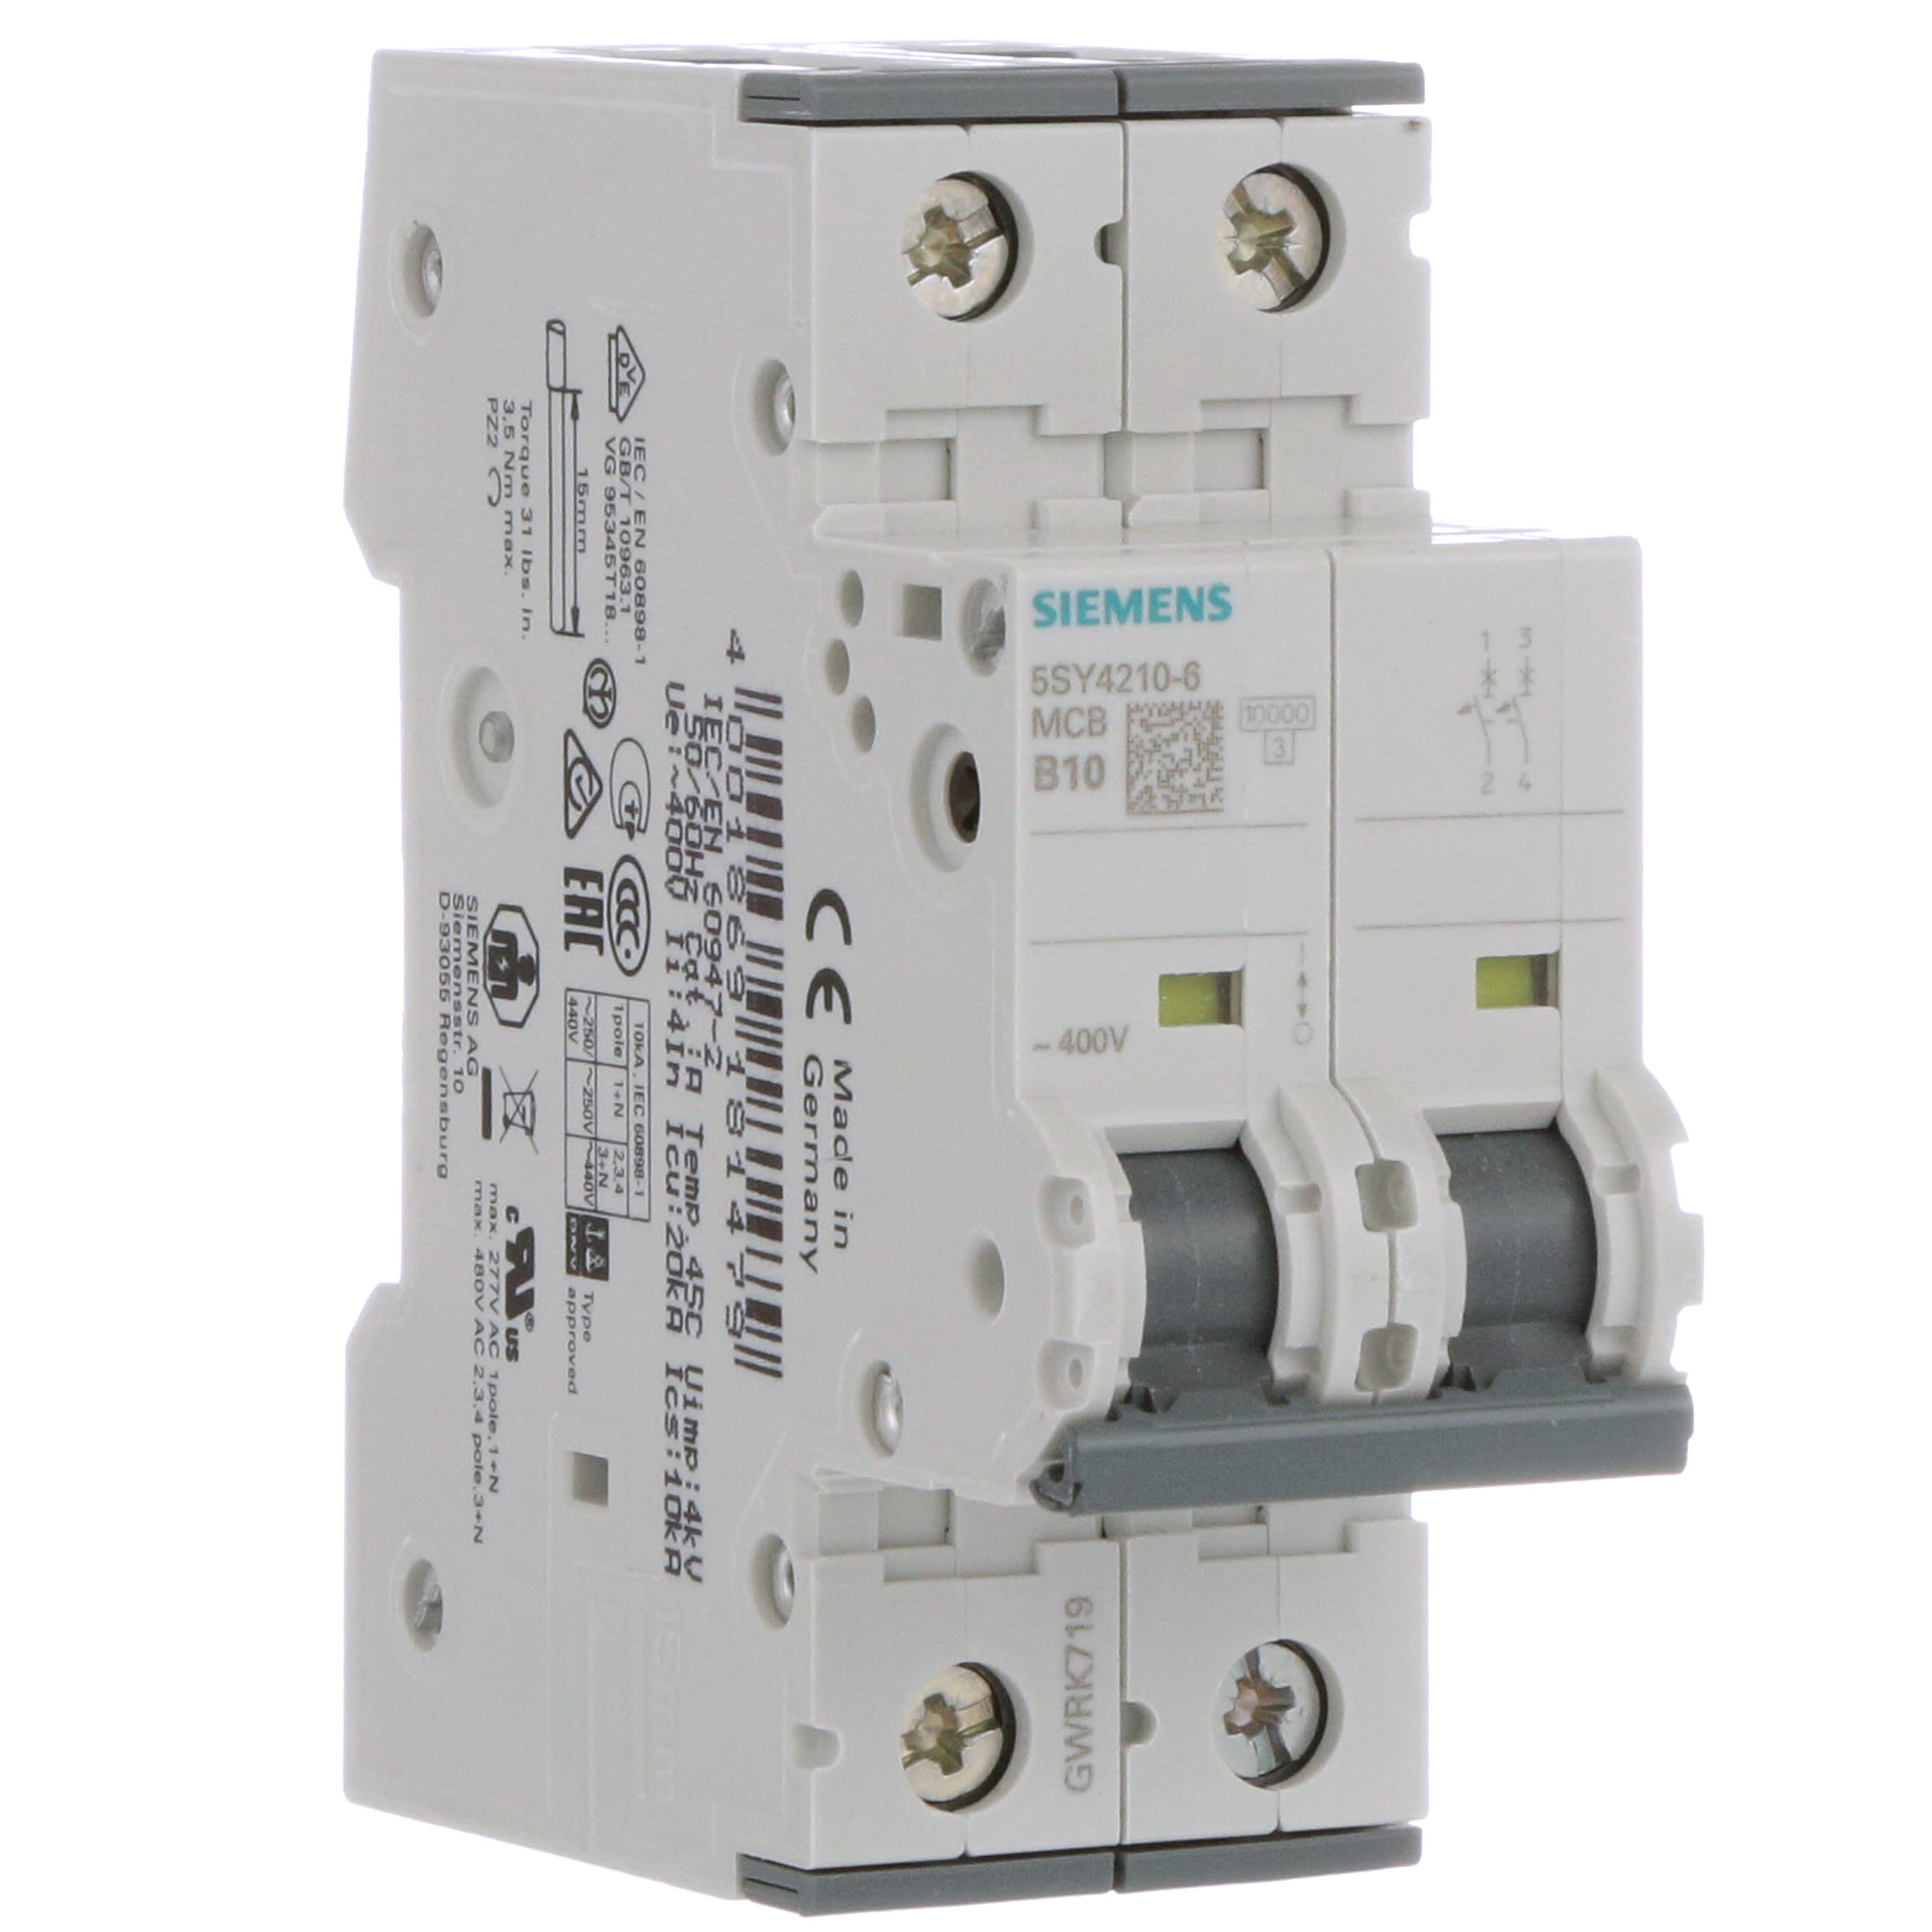 Siemens ls-interruptor 5sy4210-6 ip20 protección de tubería disyuntor 5sy42106 